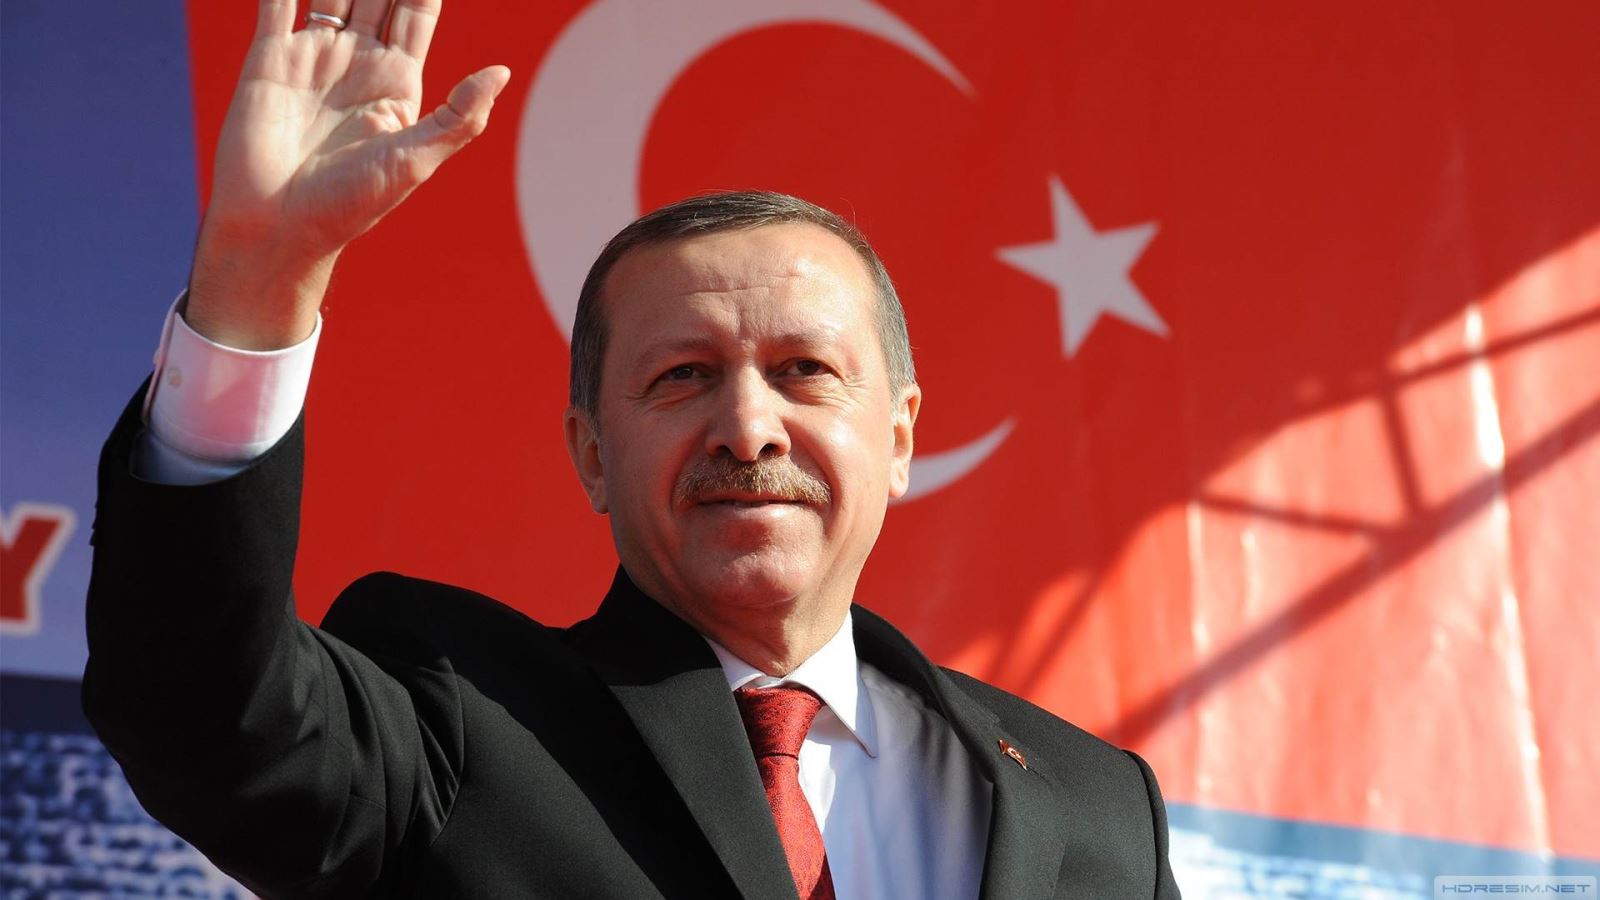 اردوغان يعدد الانجازات الاقتصادية لتحفيز الناخبين